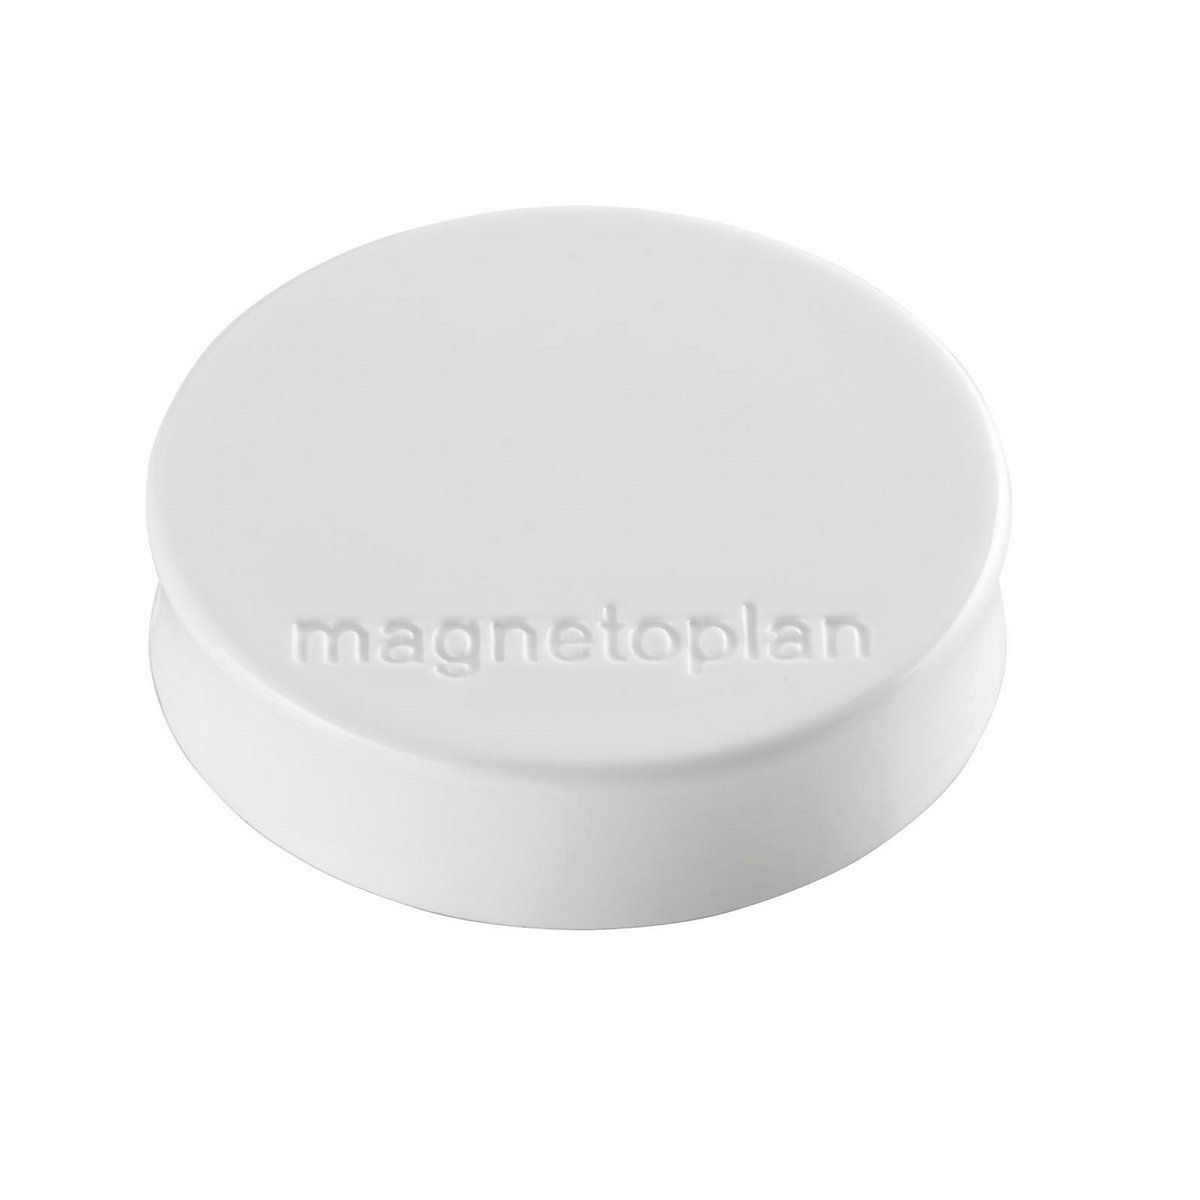 Plot magnétique Ergo – magnetoplan, Ø 30 mm, lot de 60, blanc